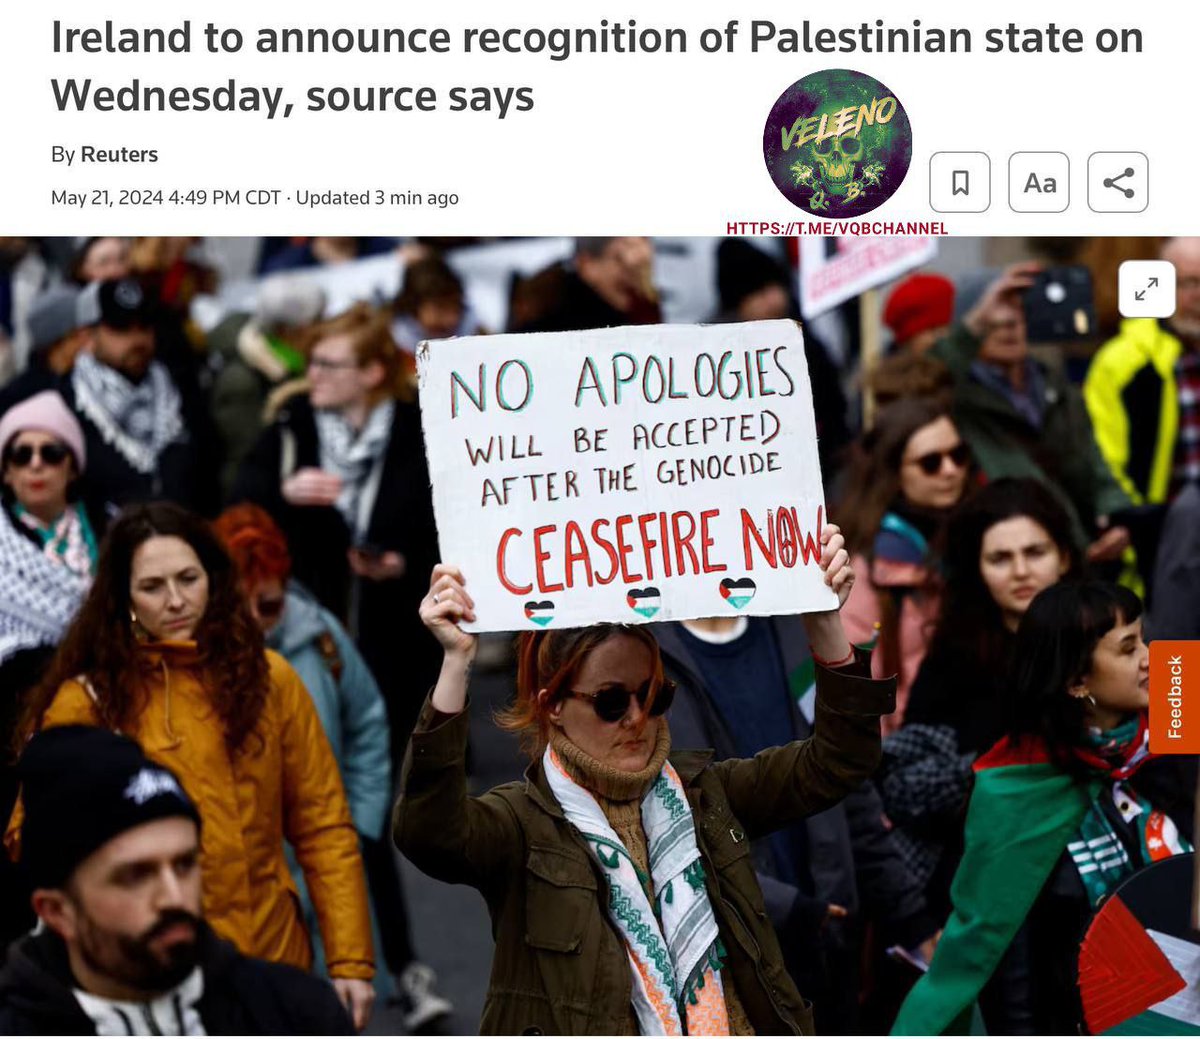 22 maggio 2024, Irlanda 

IL GOVERNO IRLANDESE ANNUNCERÀ OGGI, MERCOLEDÌ, IL RICONOSCIMENTO DELLO STATO DI PALESTINA 

#22maggio #Irlanda #Palestine 
#Medioriente #Europa #UE 
#EurasiaNews 

tinyurl.com/4vcpfmdu